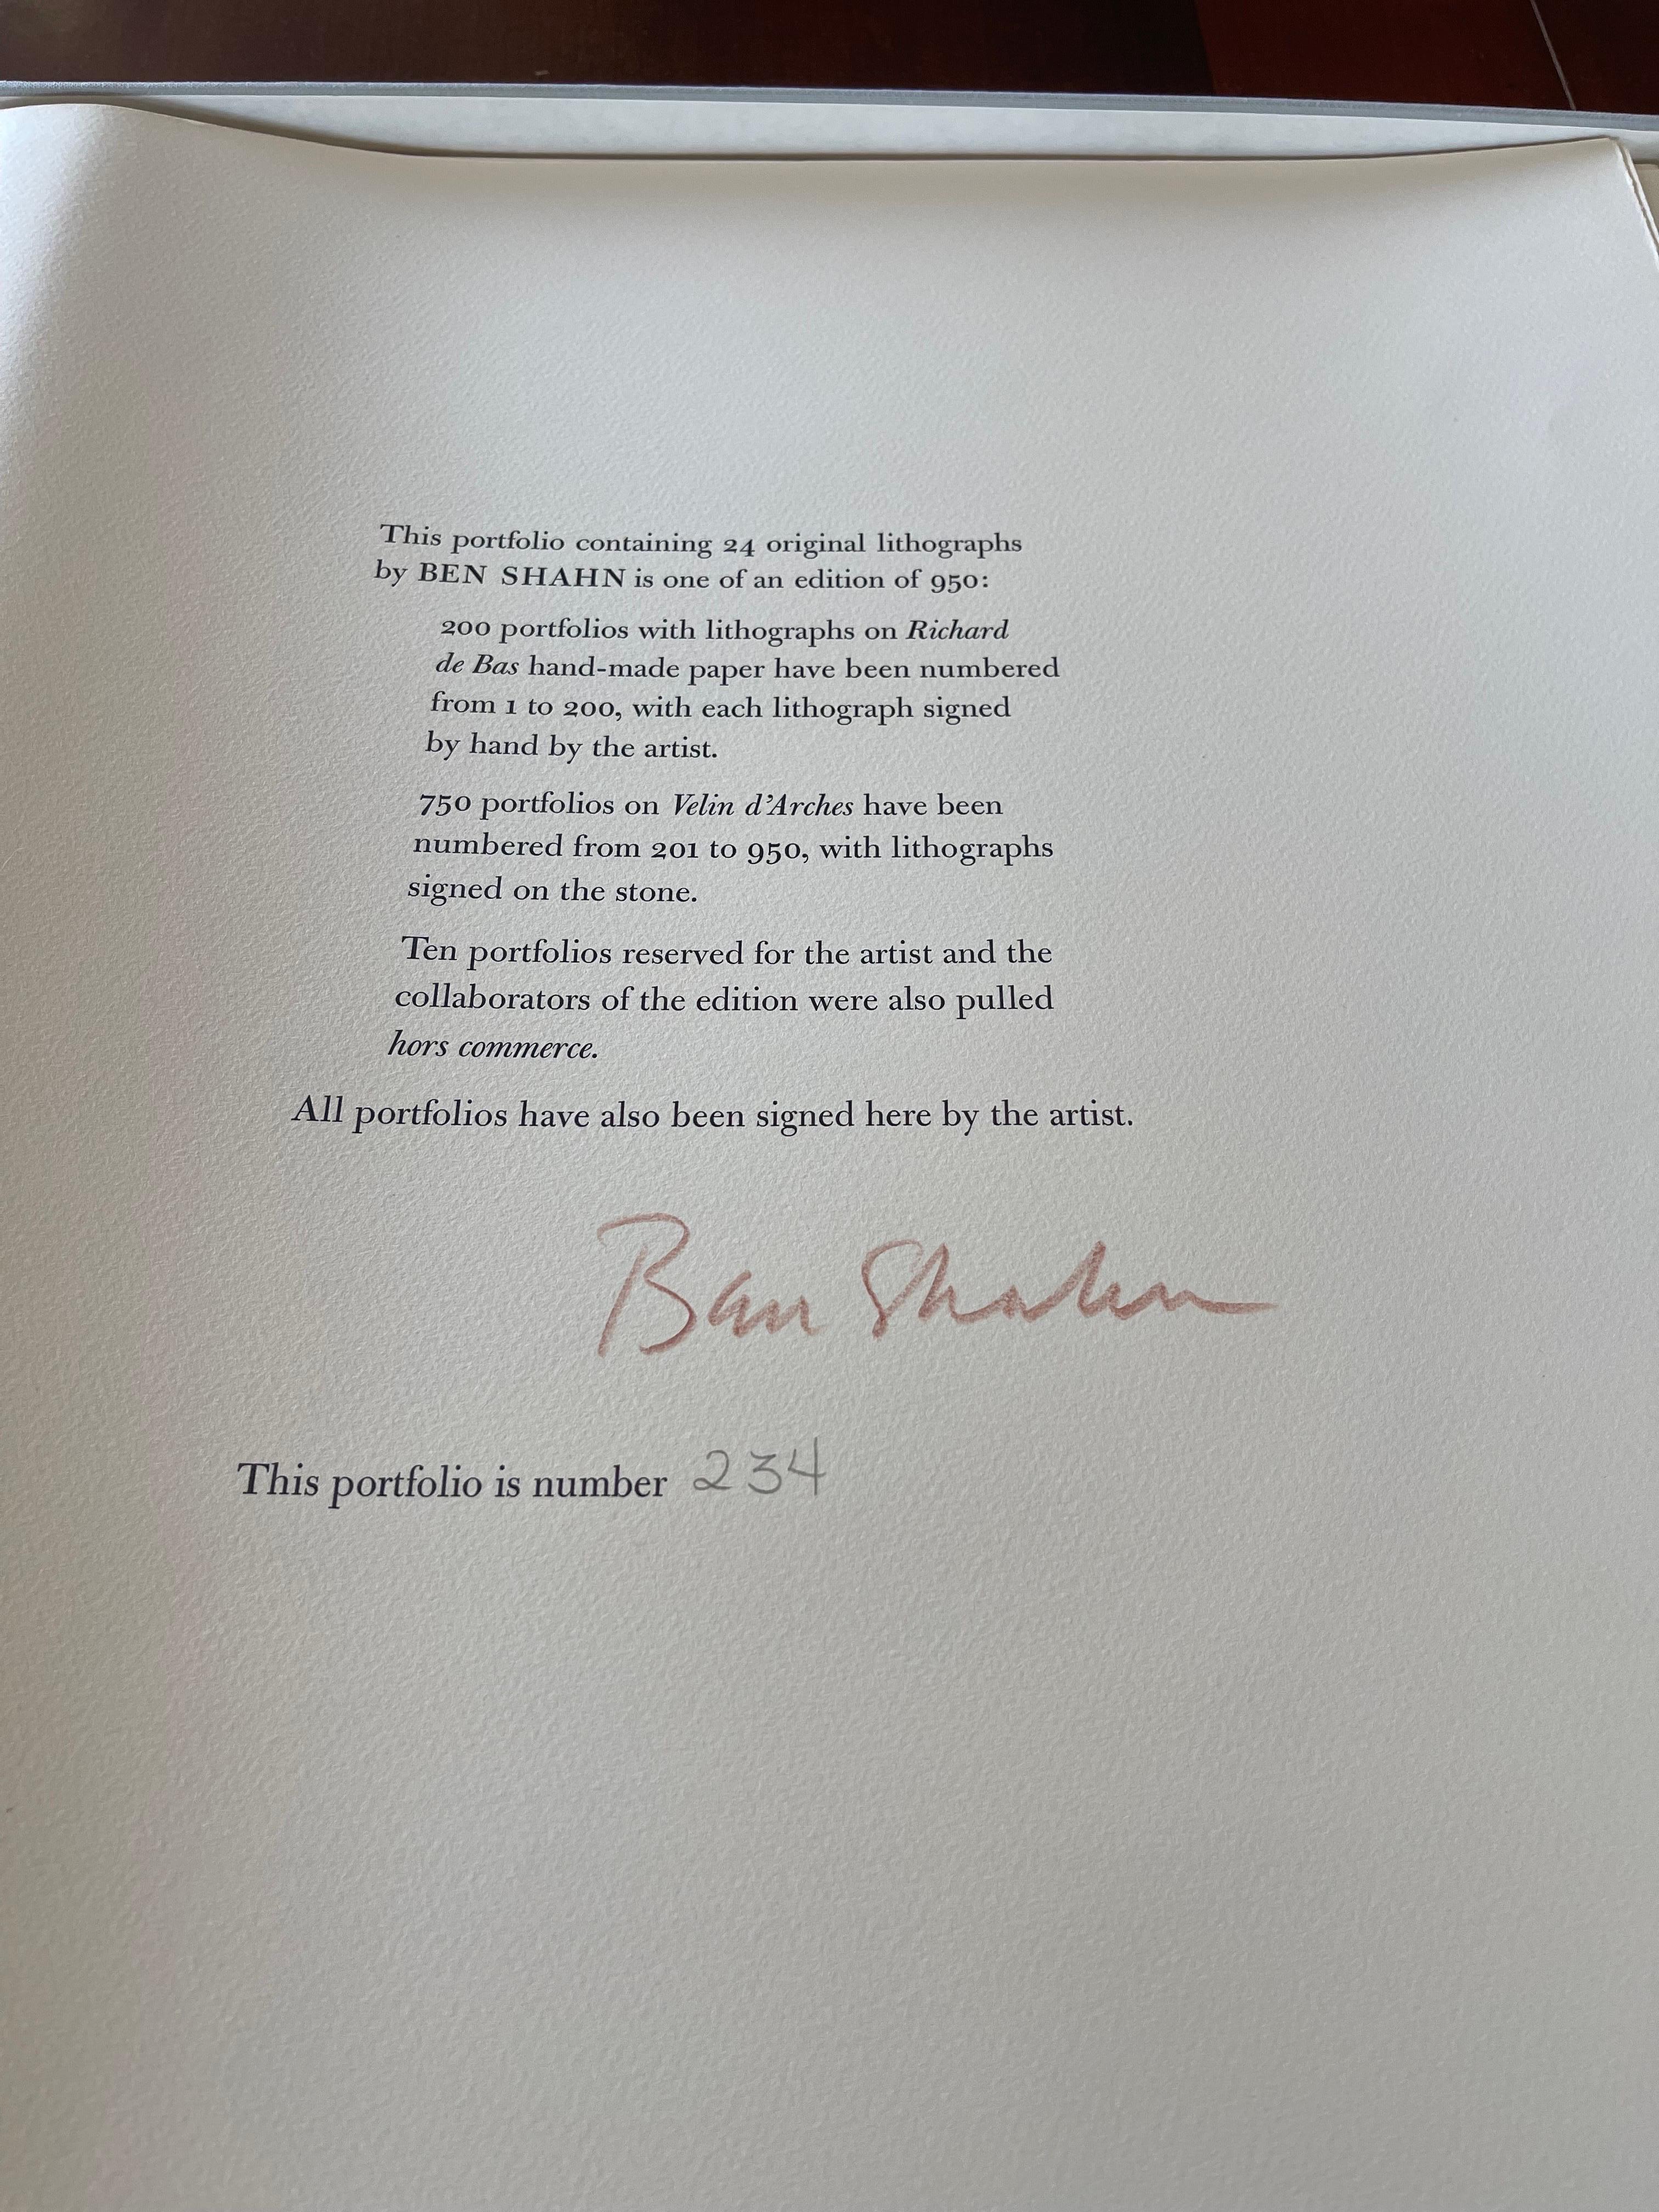 Papier Ben Shahn portfolio très convoité en édition limitée #234 avec 24 lithographies de R. M. Rilke en vente